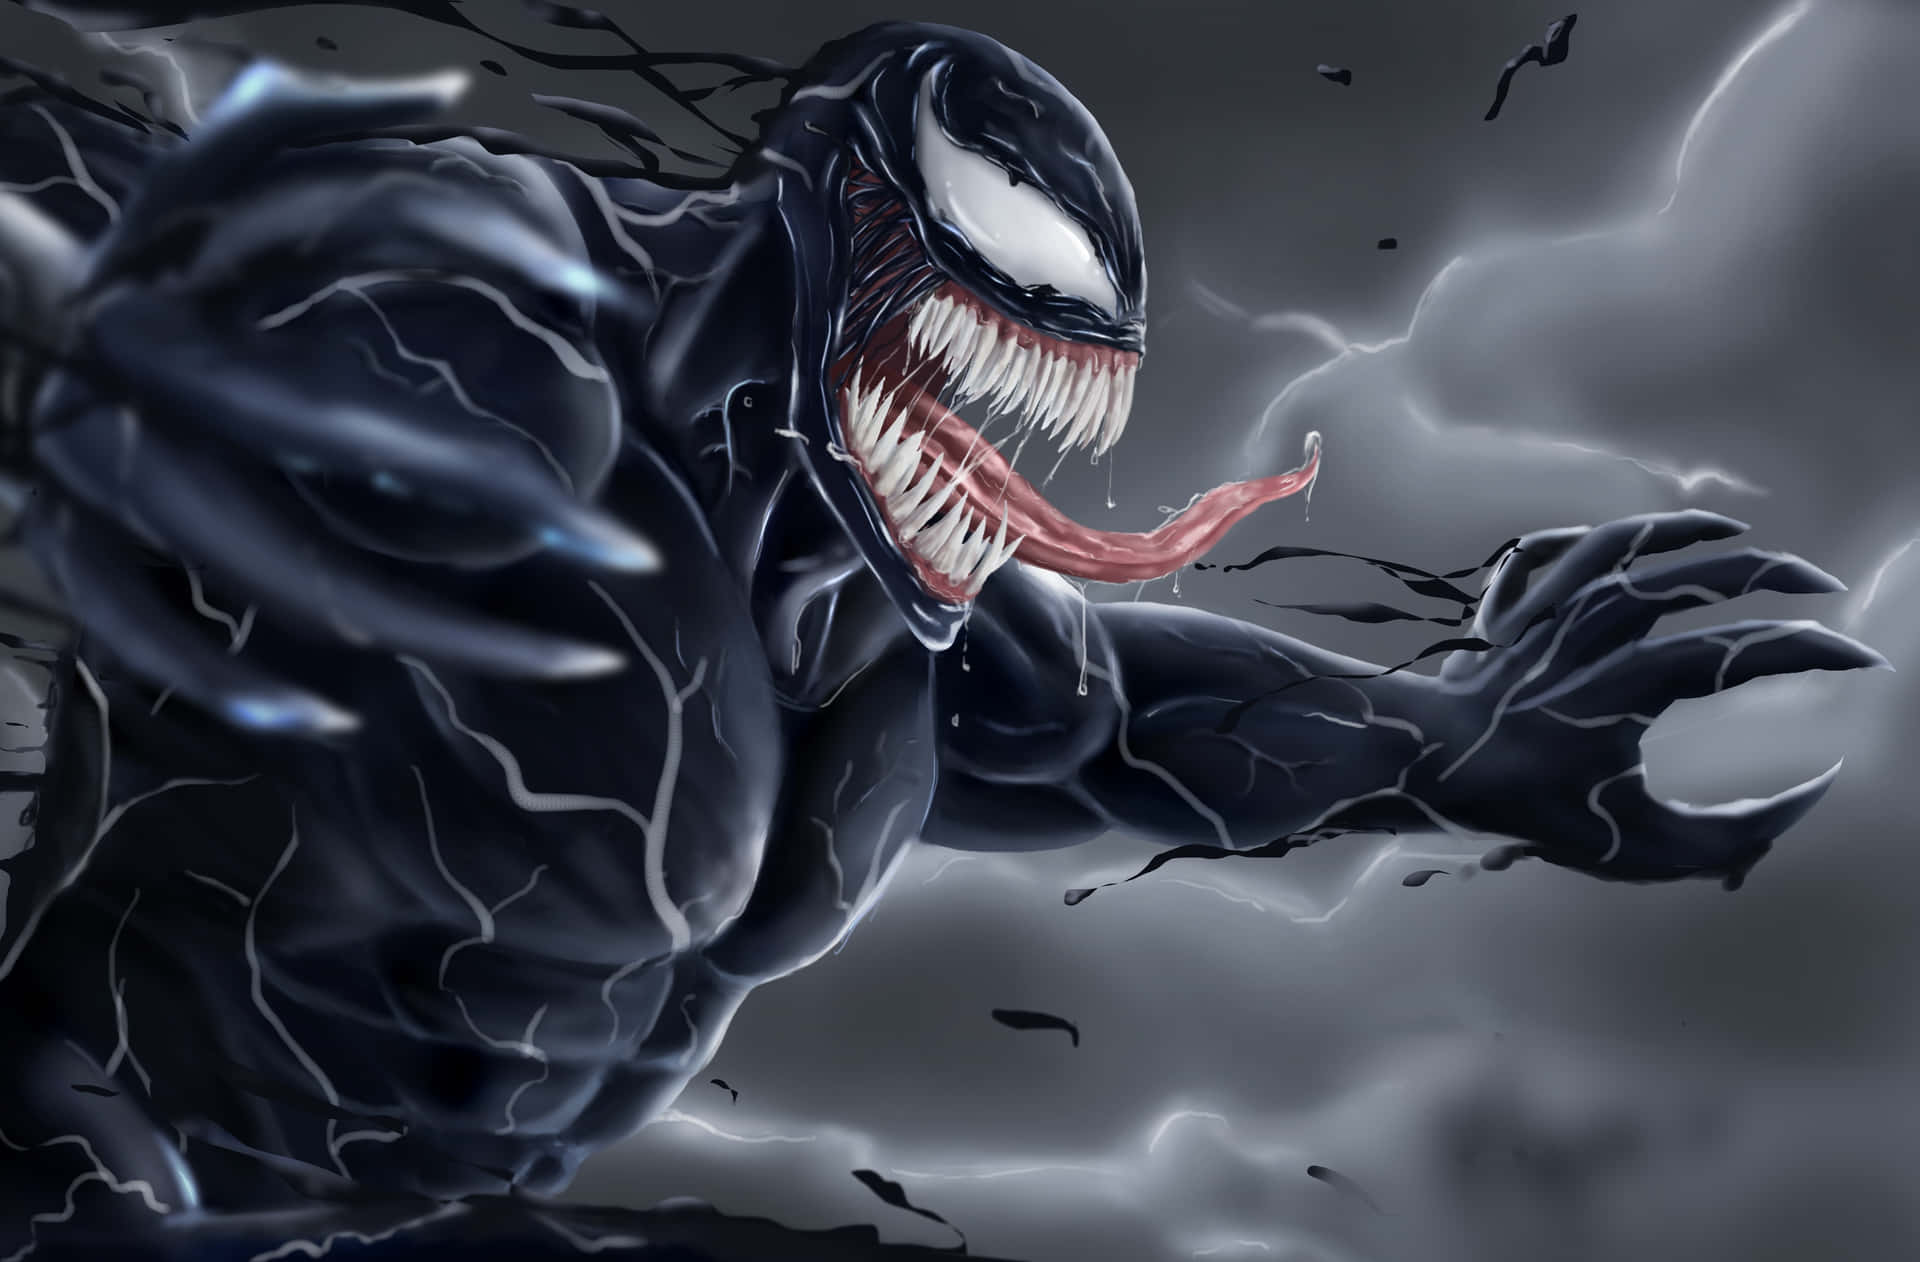 Spüredie Macht Von Venom!